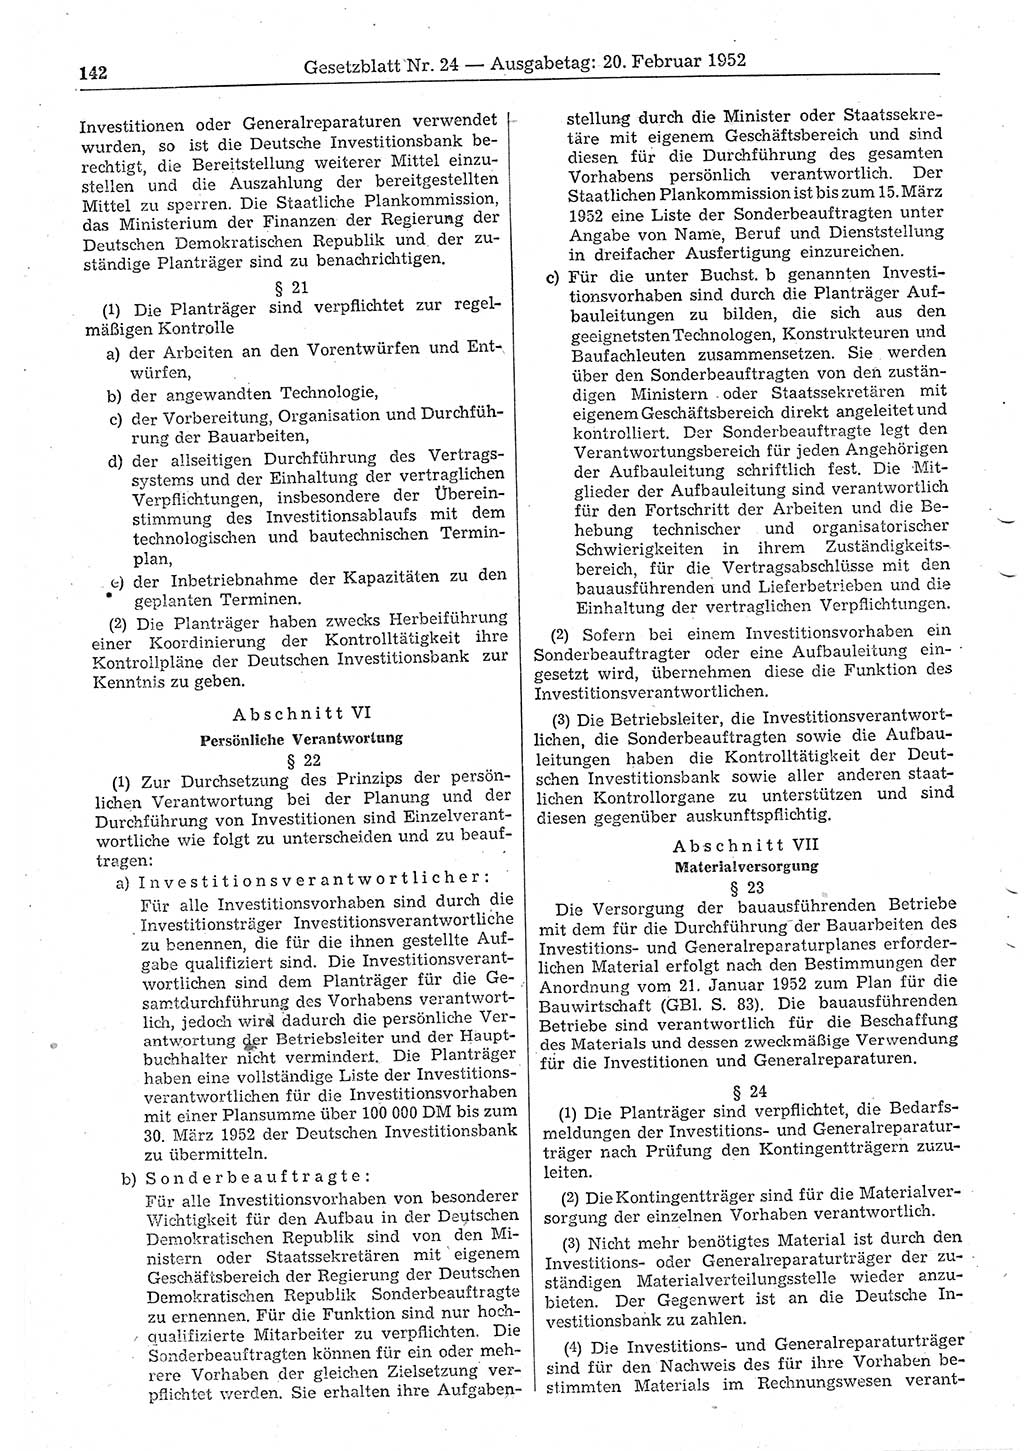 Gesetzblatt (GBl.) der Deutschen Demokratischen Republik (DDR) 1952, Seite 142 (GBl. DDR 1952, S. 142)